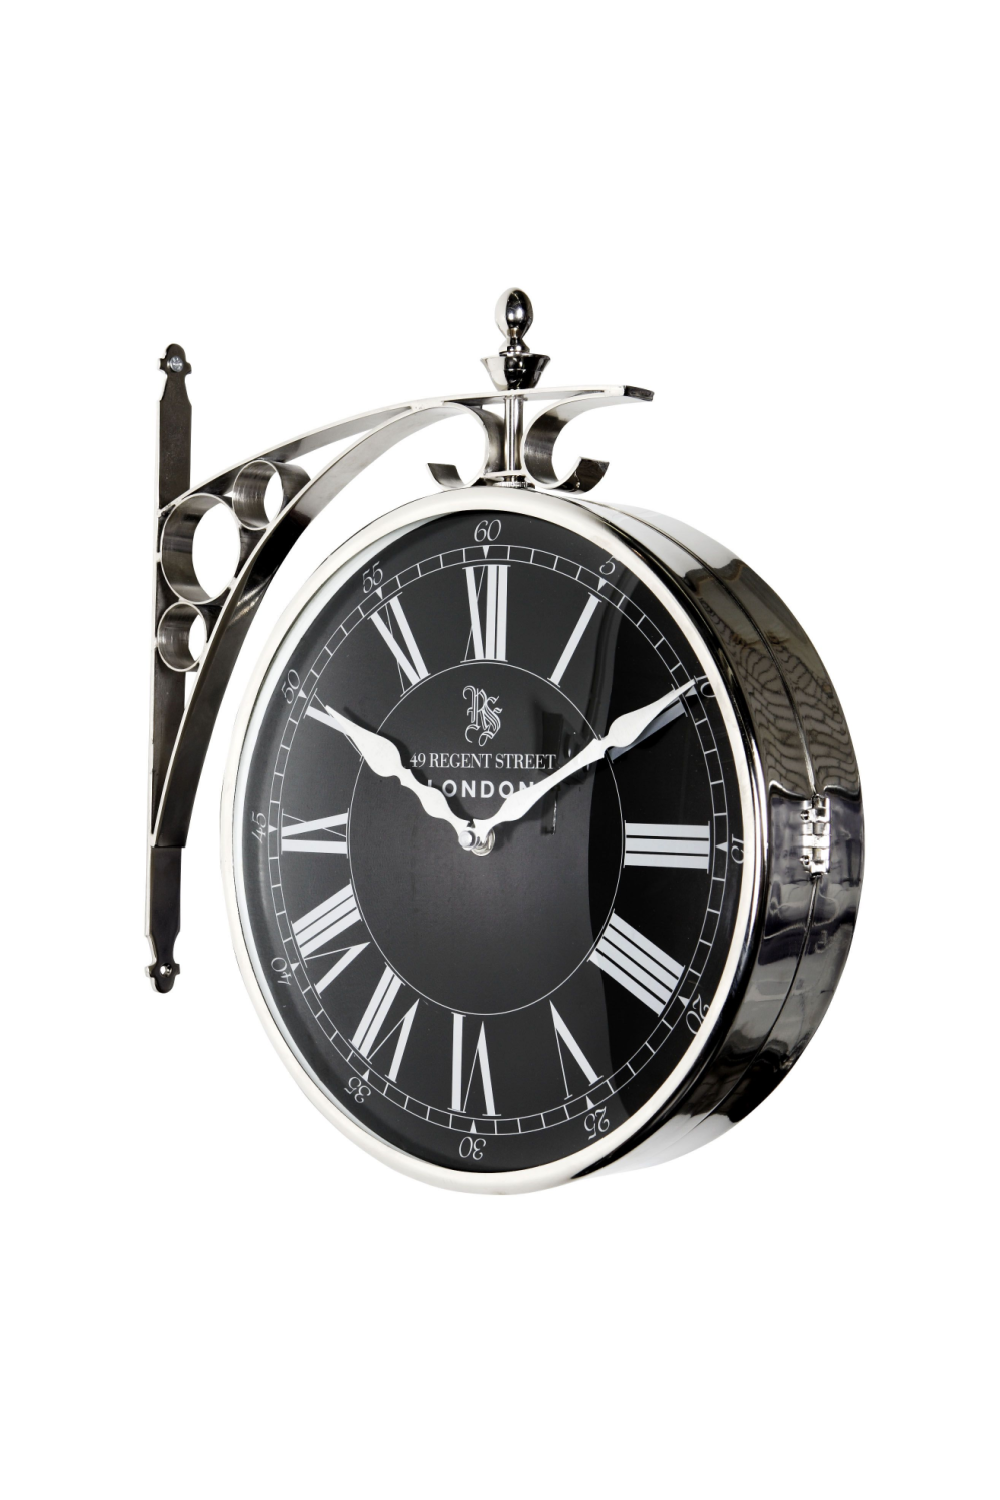 Relojes decorativos Eichholtz - Reloj de repisa o de mesa y de pared